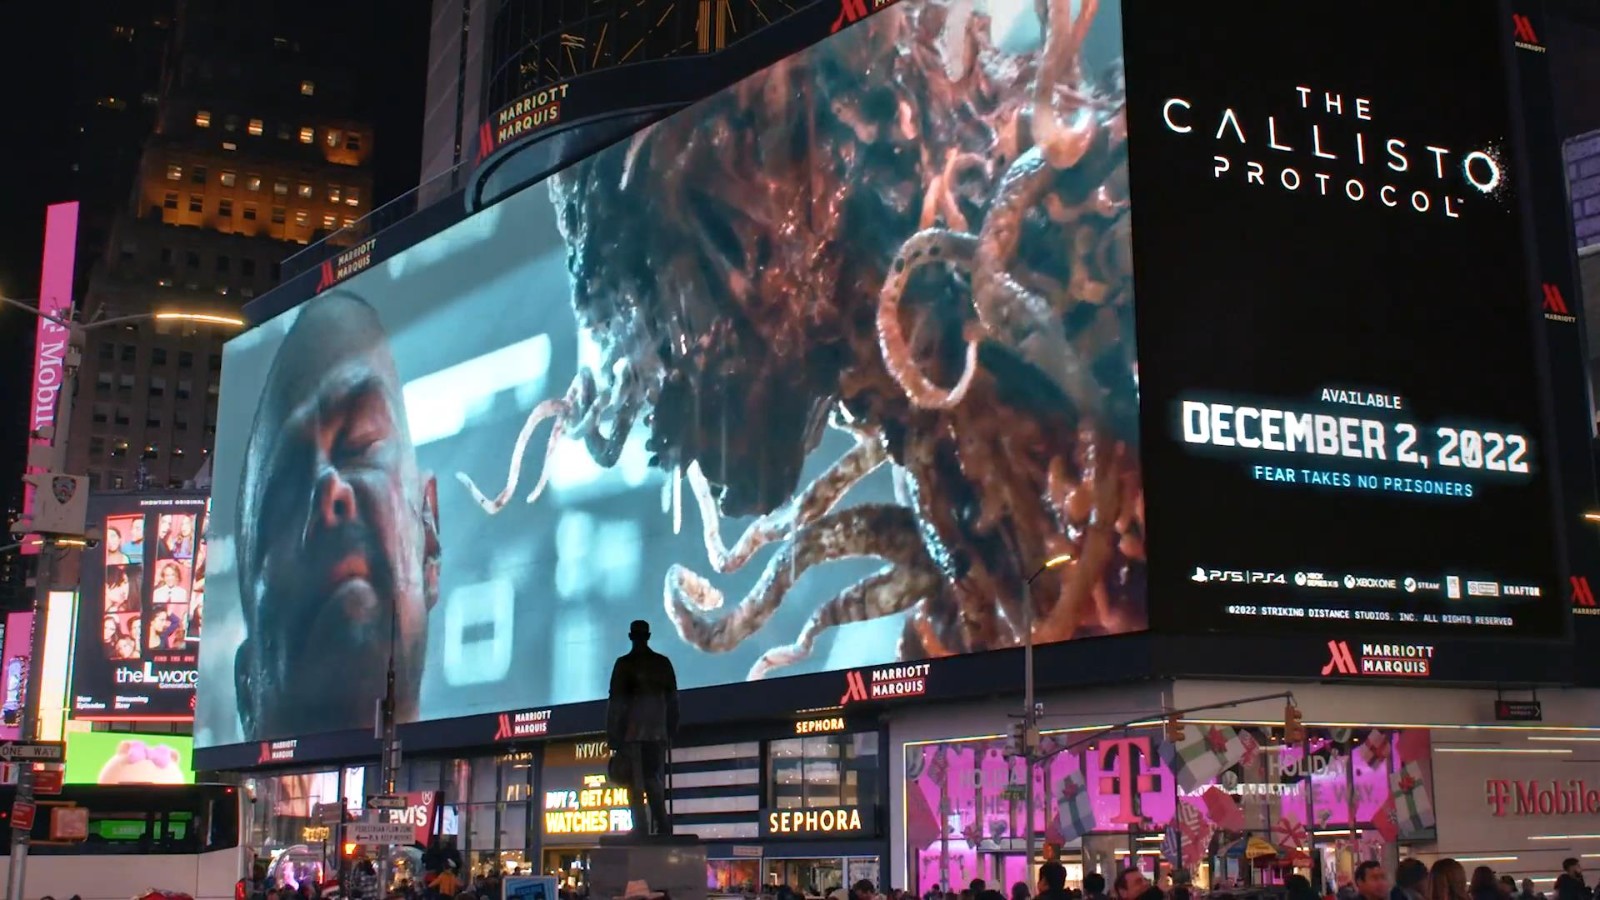 《木卫四协议》3D街头广告 怪物扑面而来路人吓尿